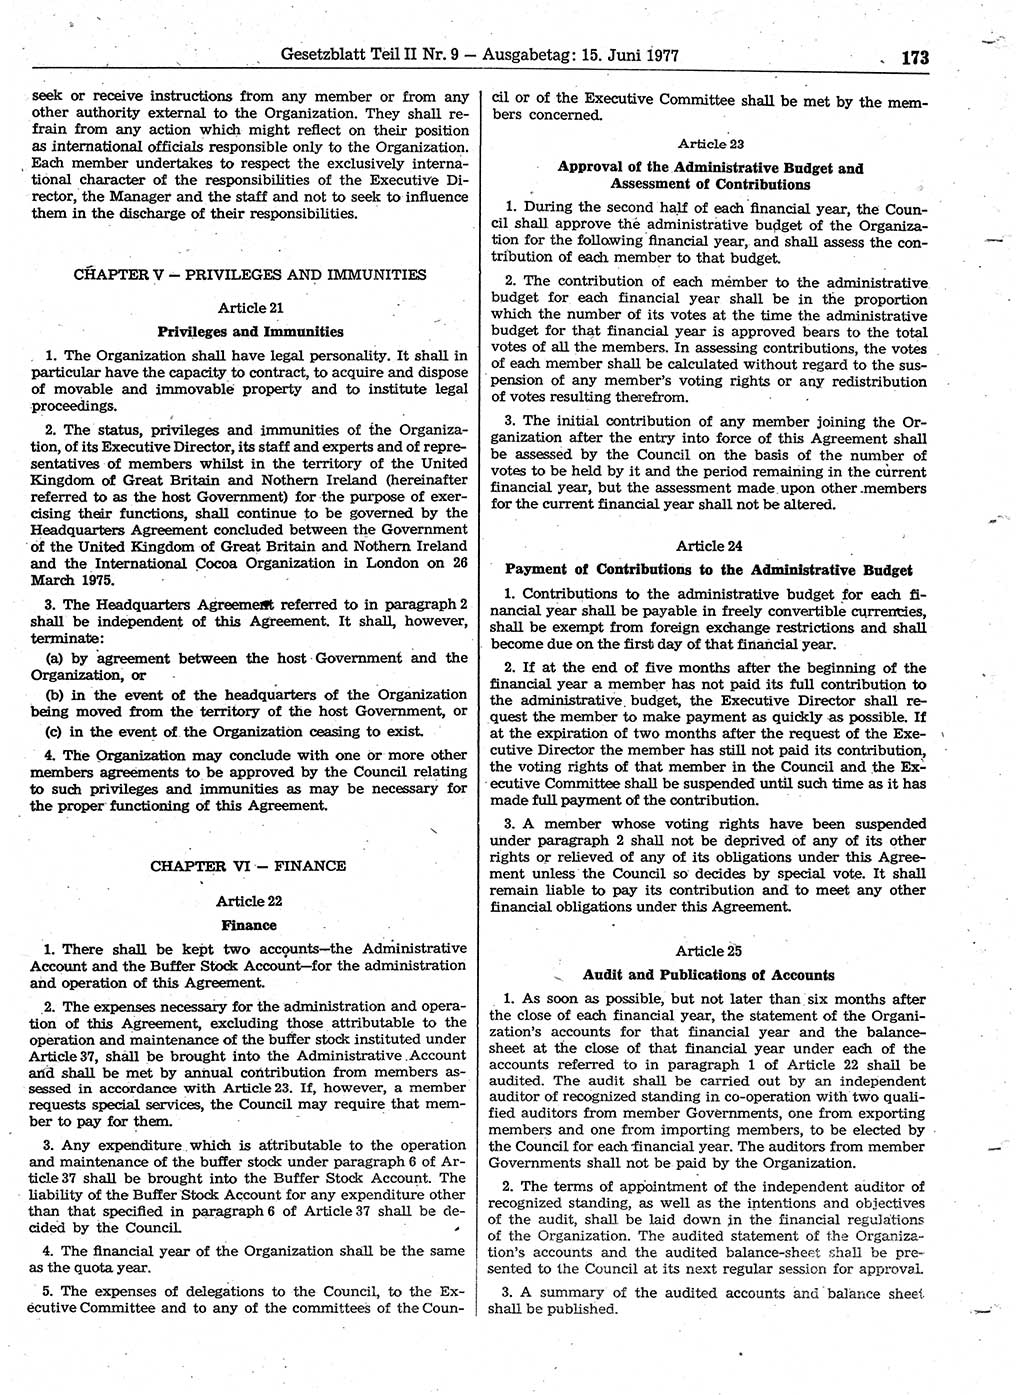 Gesetzblatt (GBl.) der Deutschen Demokratischen Republik (DDR) Teil ⅠⅠ 1977, Seite 173 (GBl. DDR ⅠⅠ 1977, S. 173)